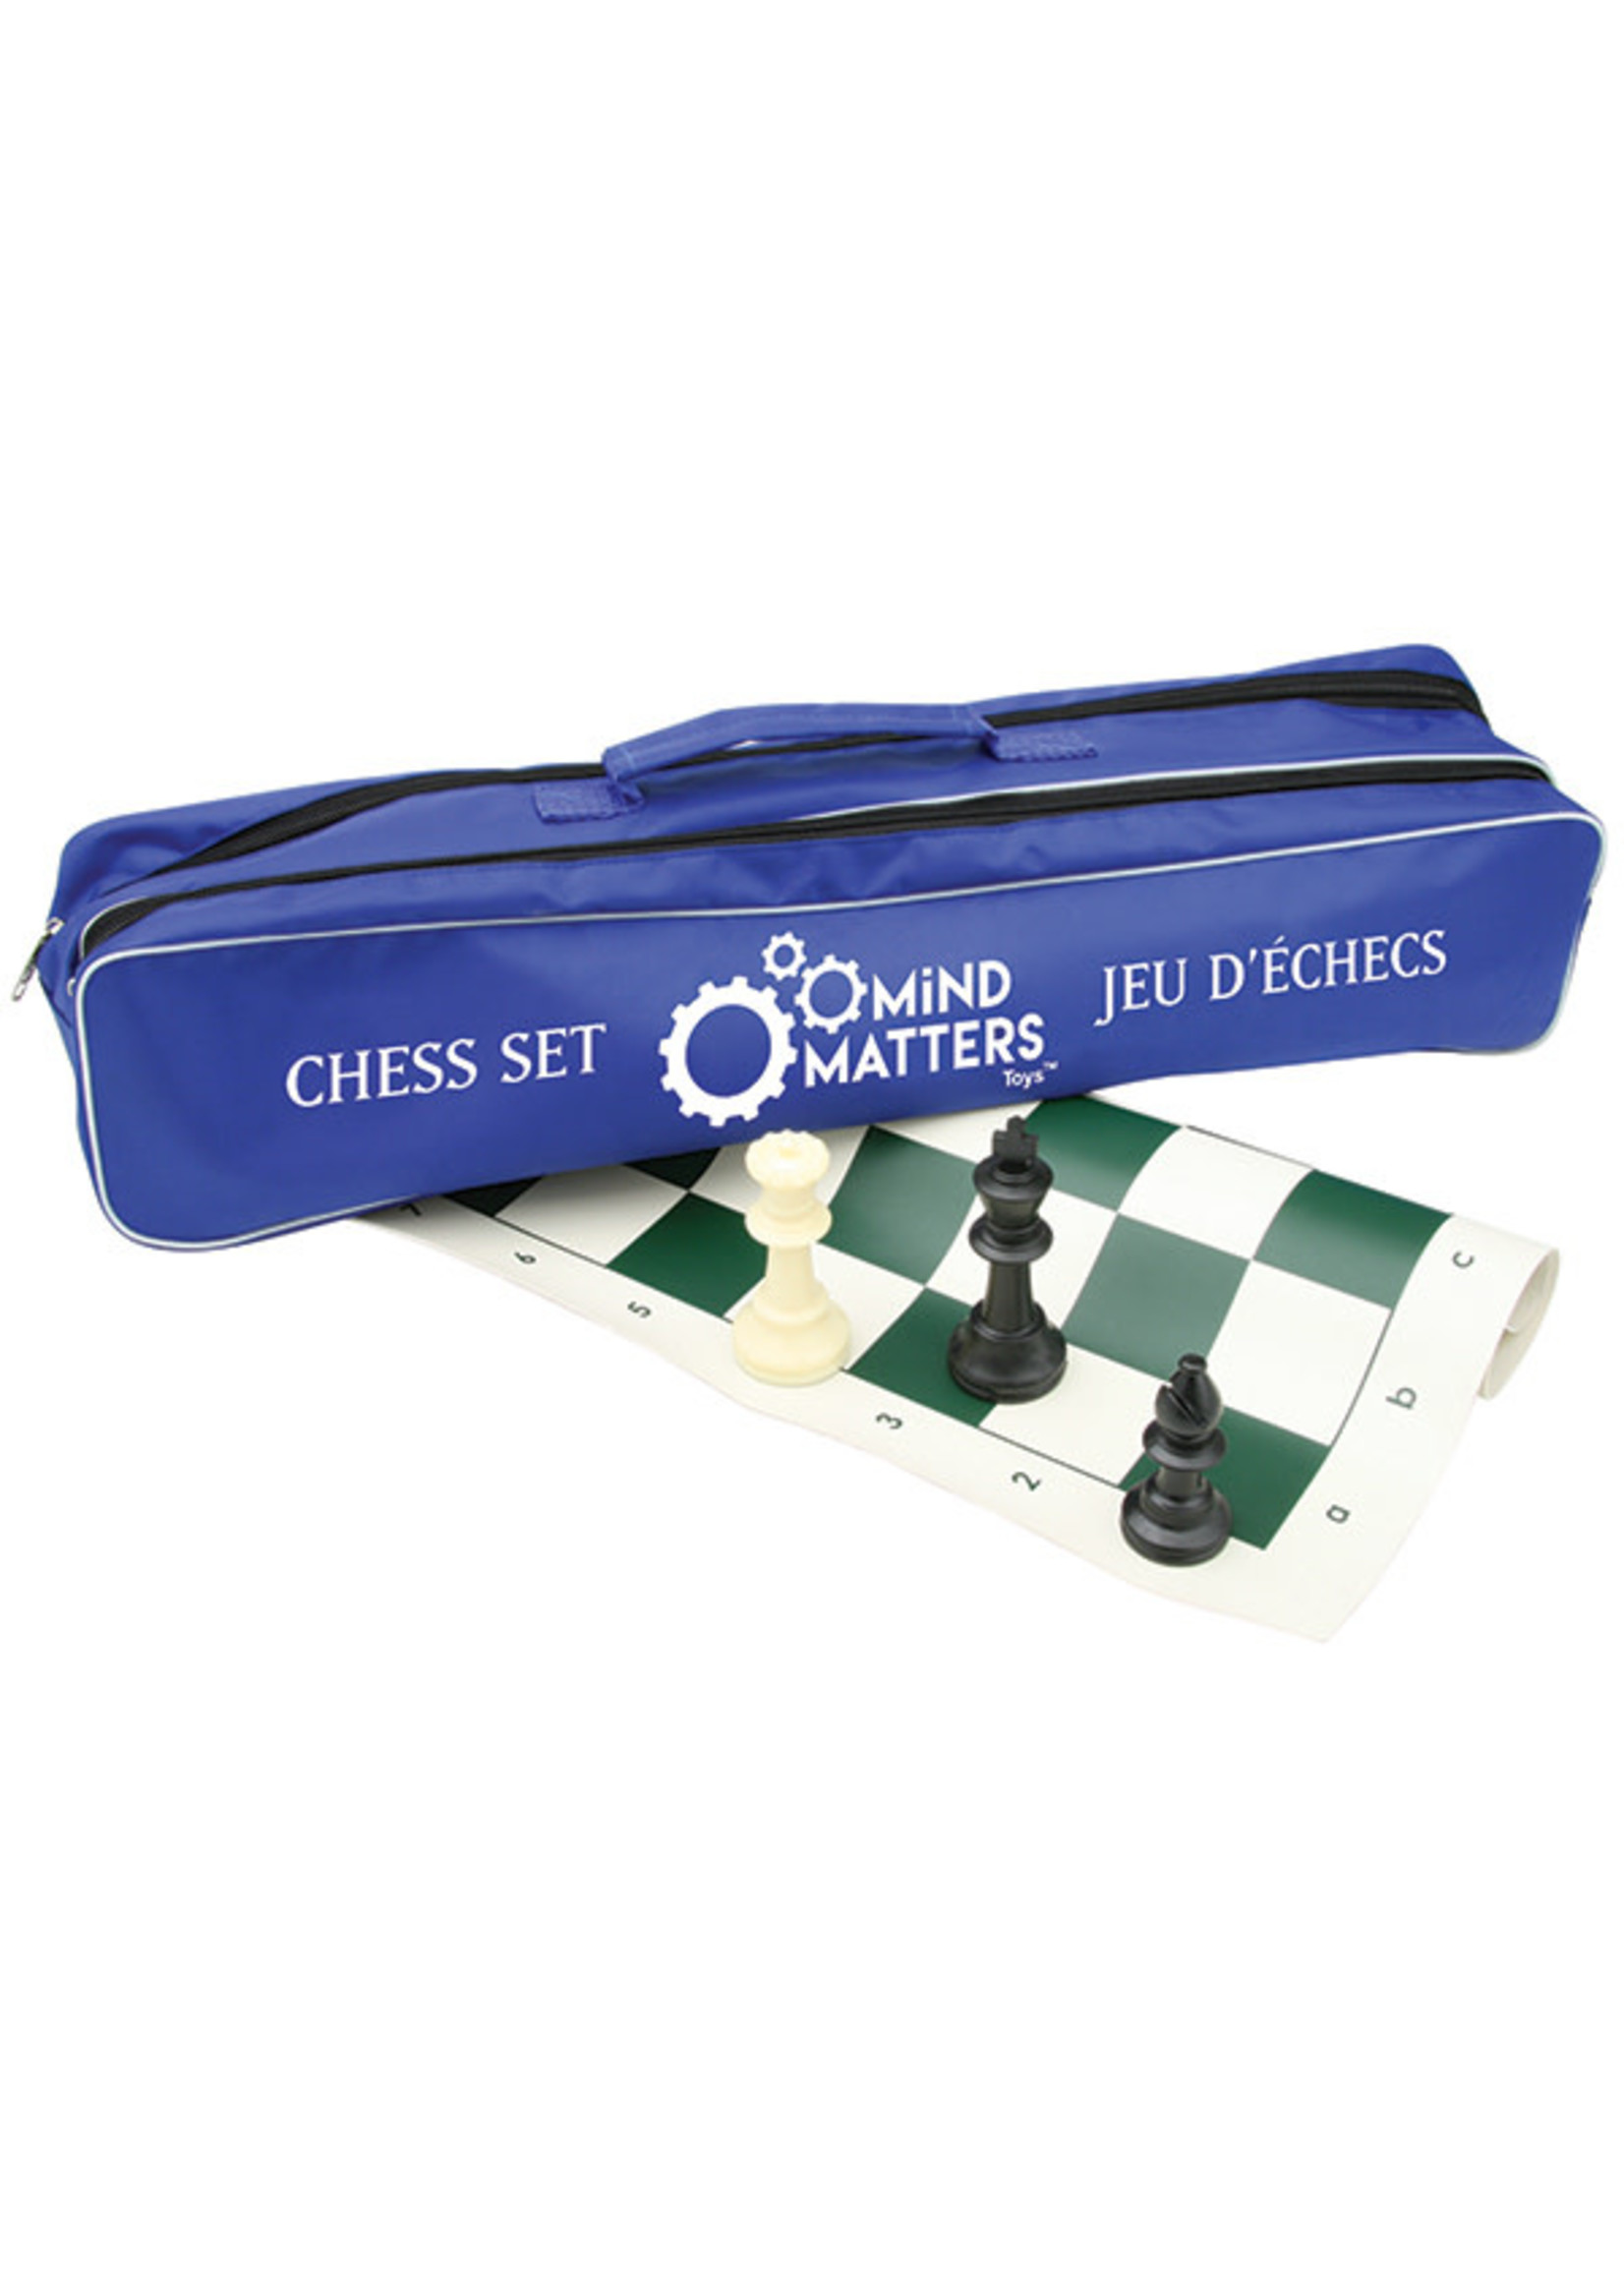 Autruche Chess set - Bag